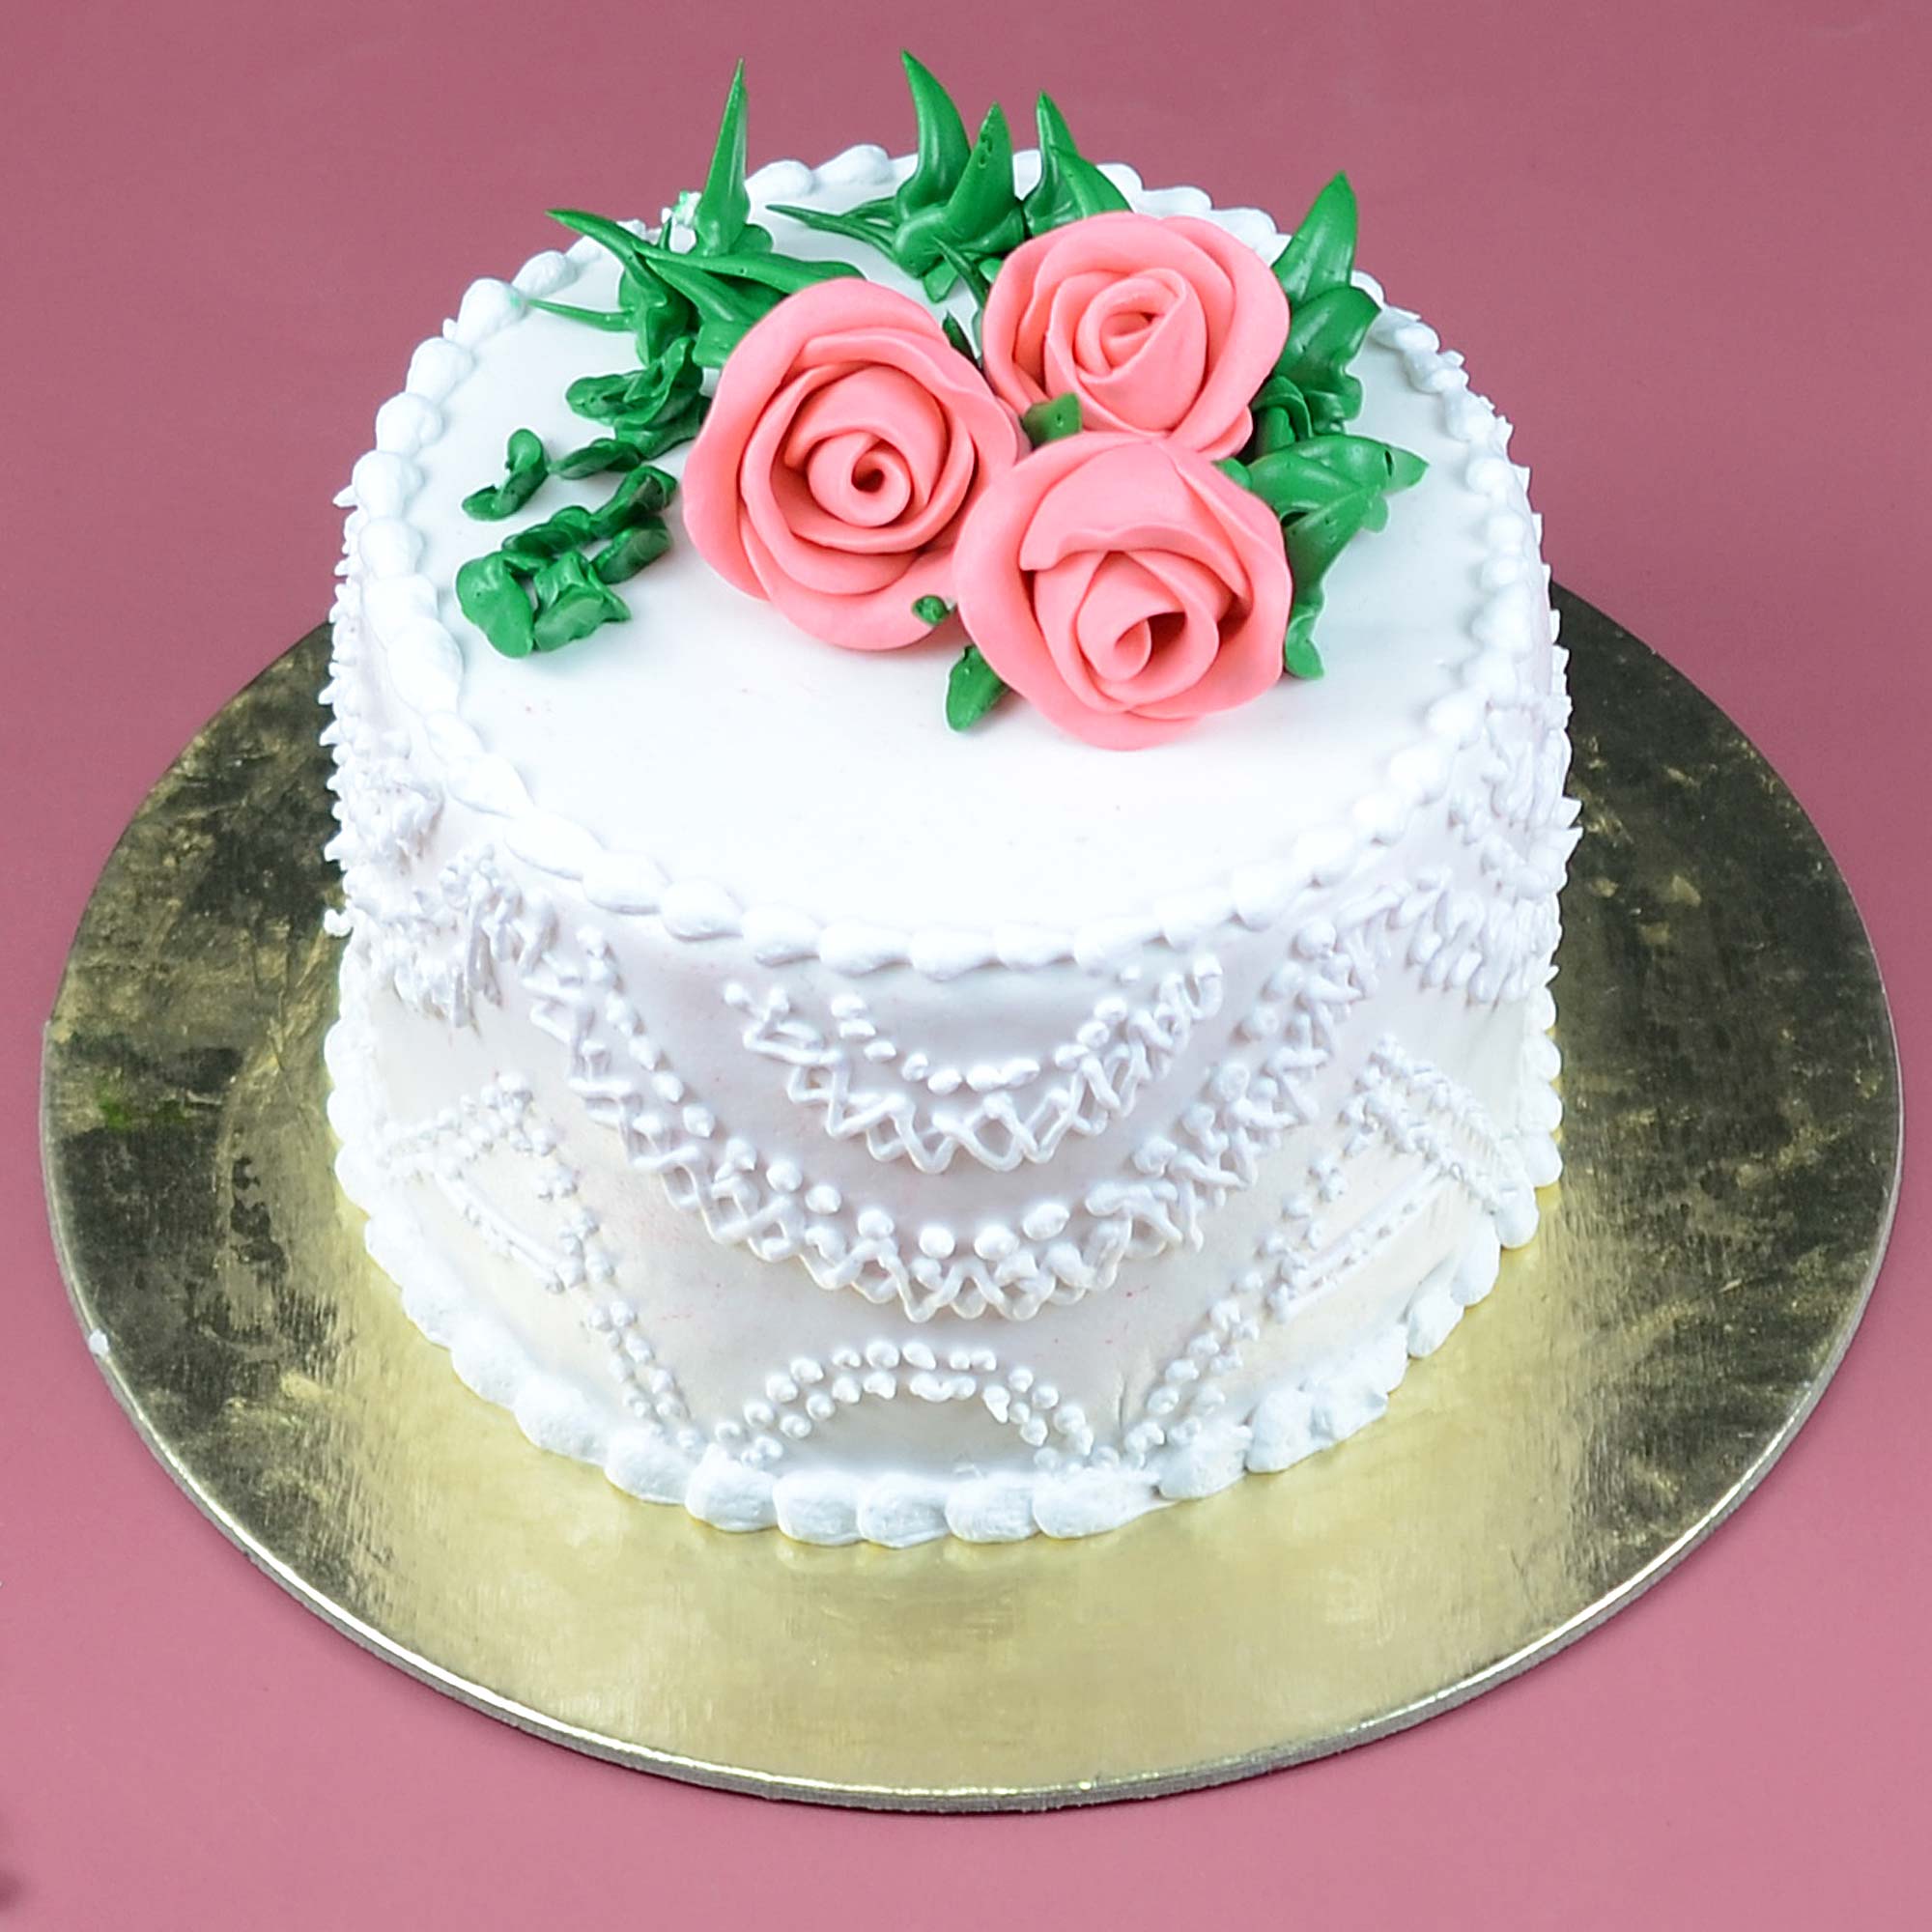 Best Vanilla Cake In Chennai | Order Online